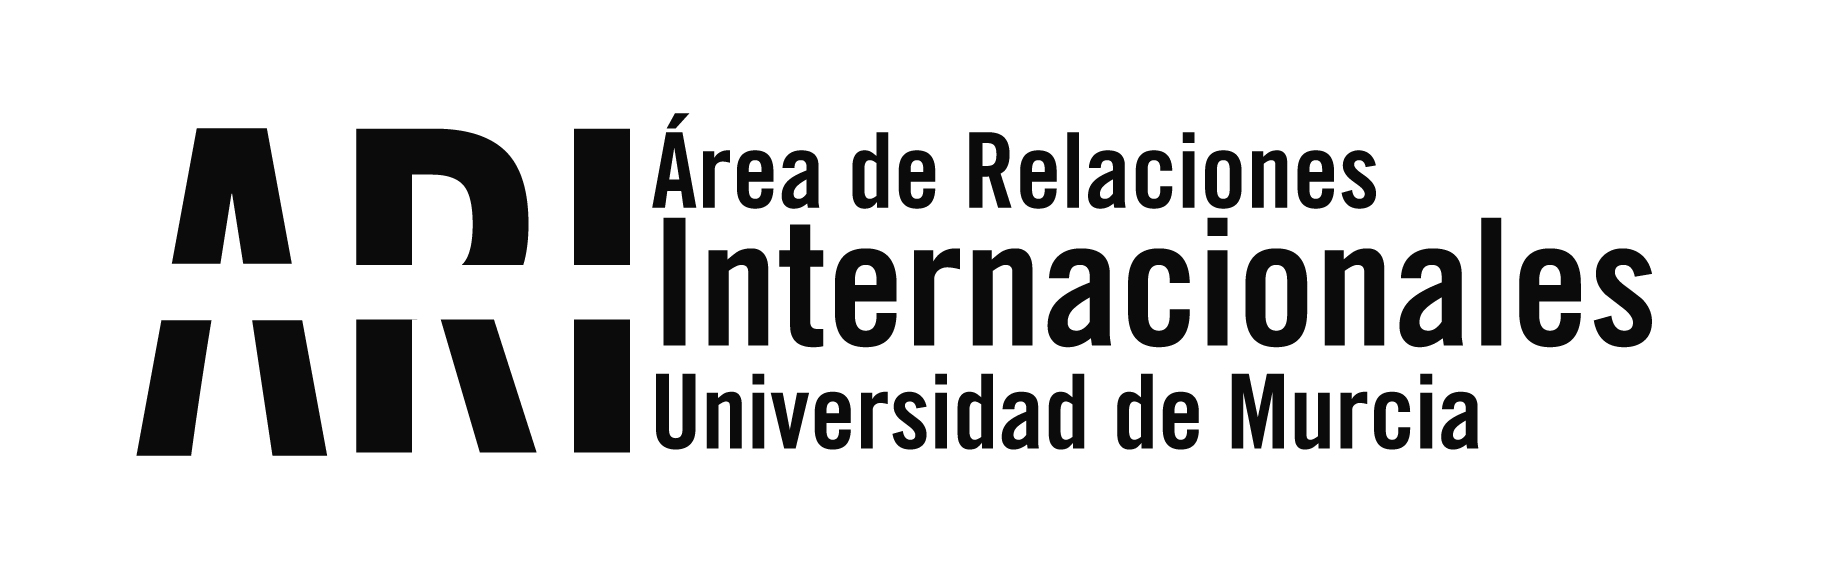 La Universidad de Murcia da la bienvenida a 500 nuevos alumnos internacionales - Área de Relaciones Internacionales